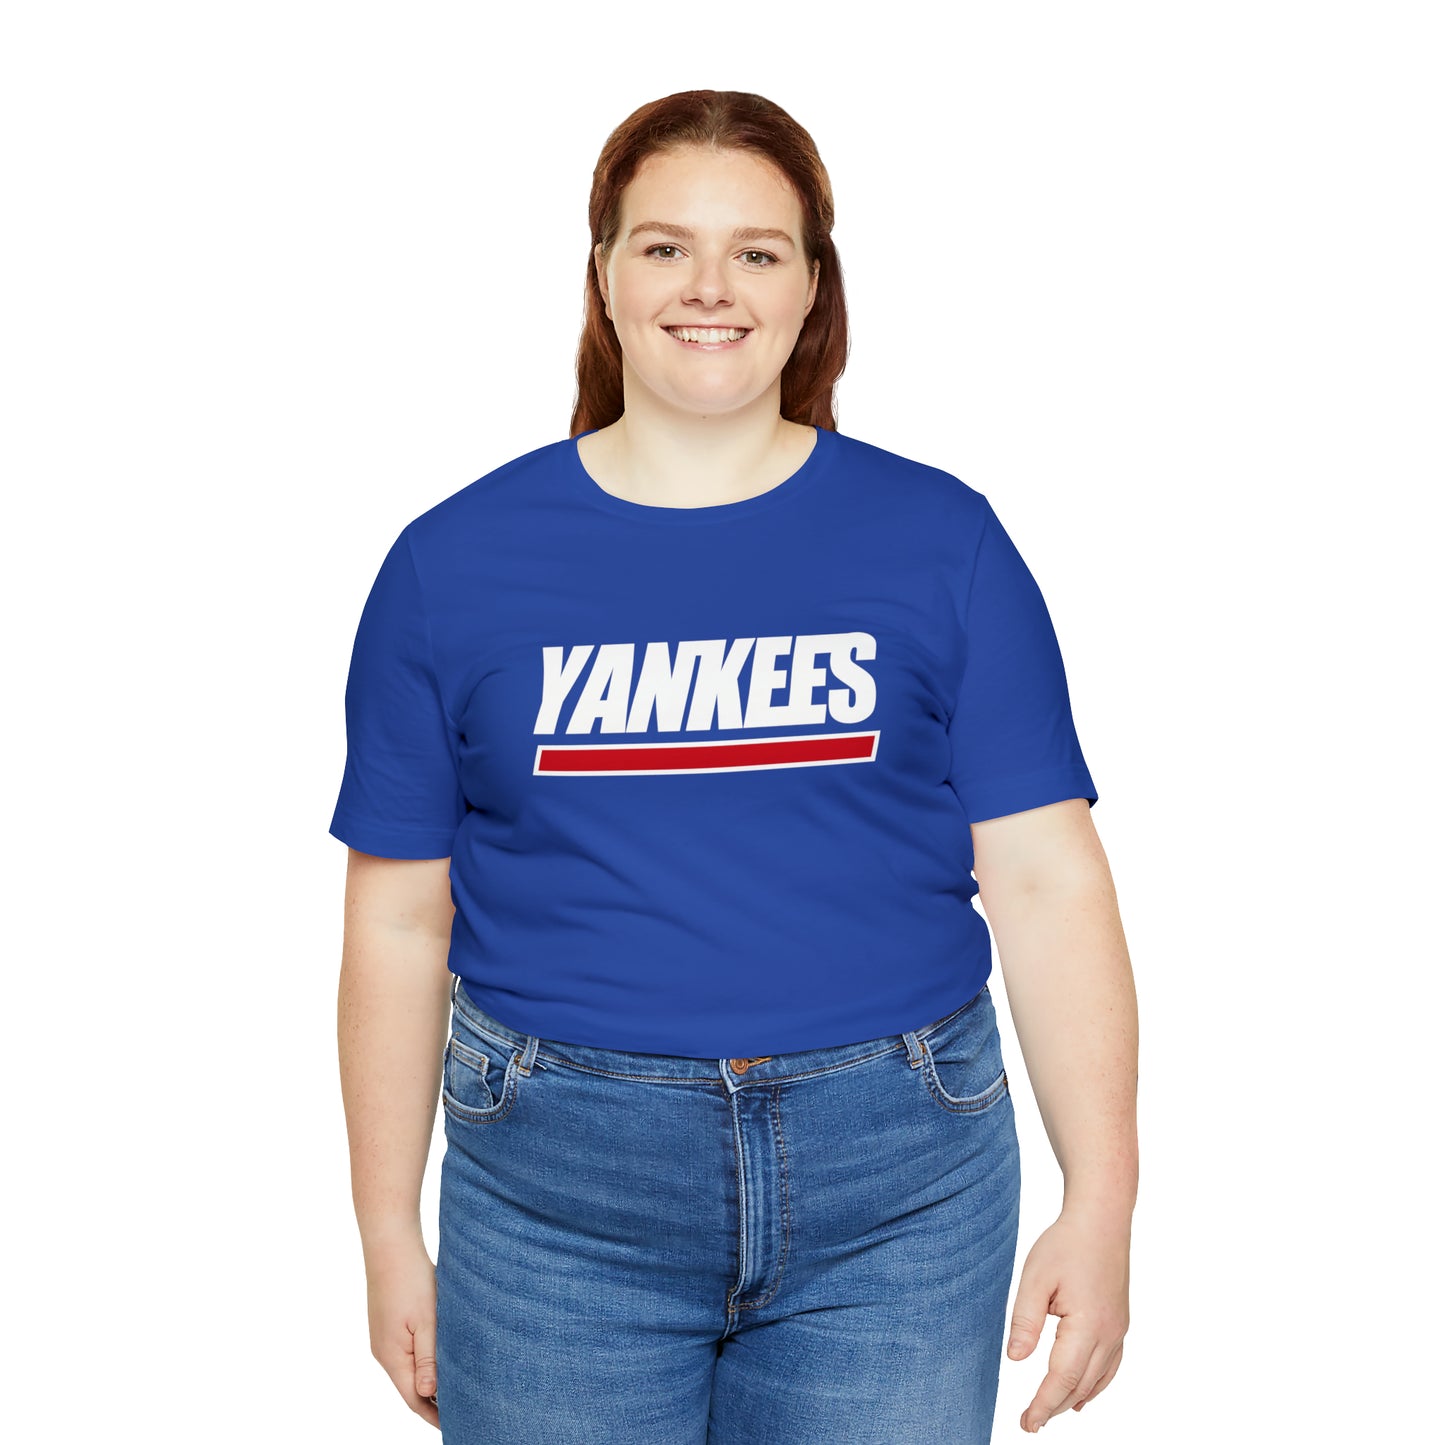 NY Giants & Yankees Mash-Up Tee - NY Sports Powerhouses Unite - thenightmareinc